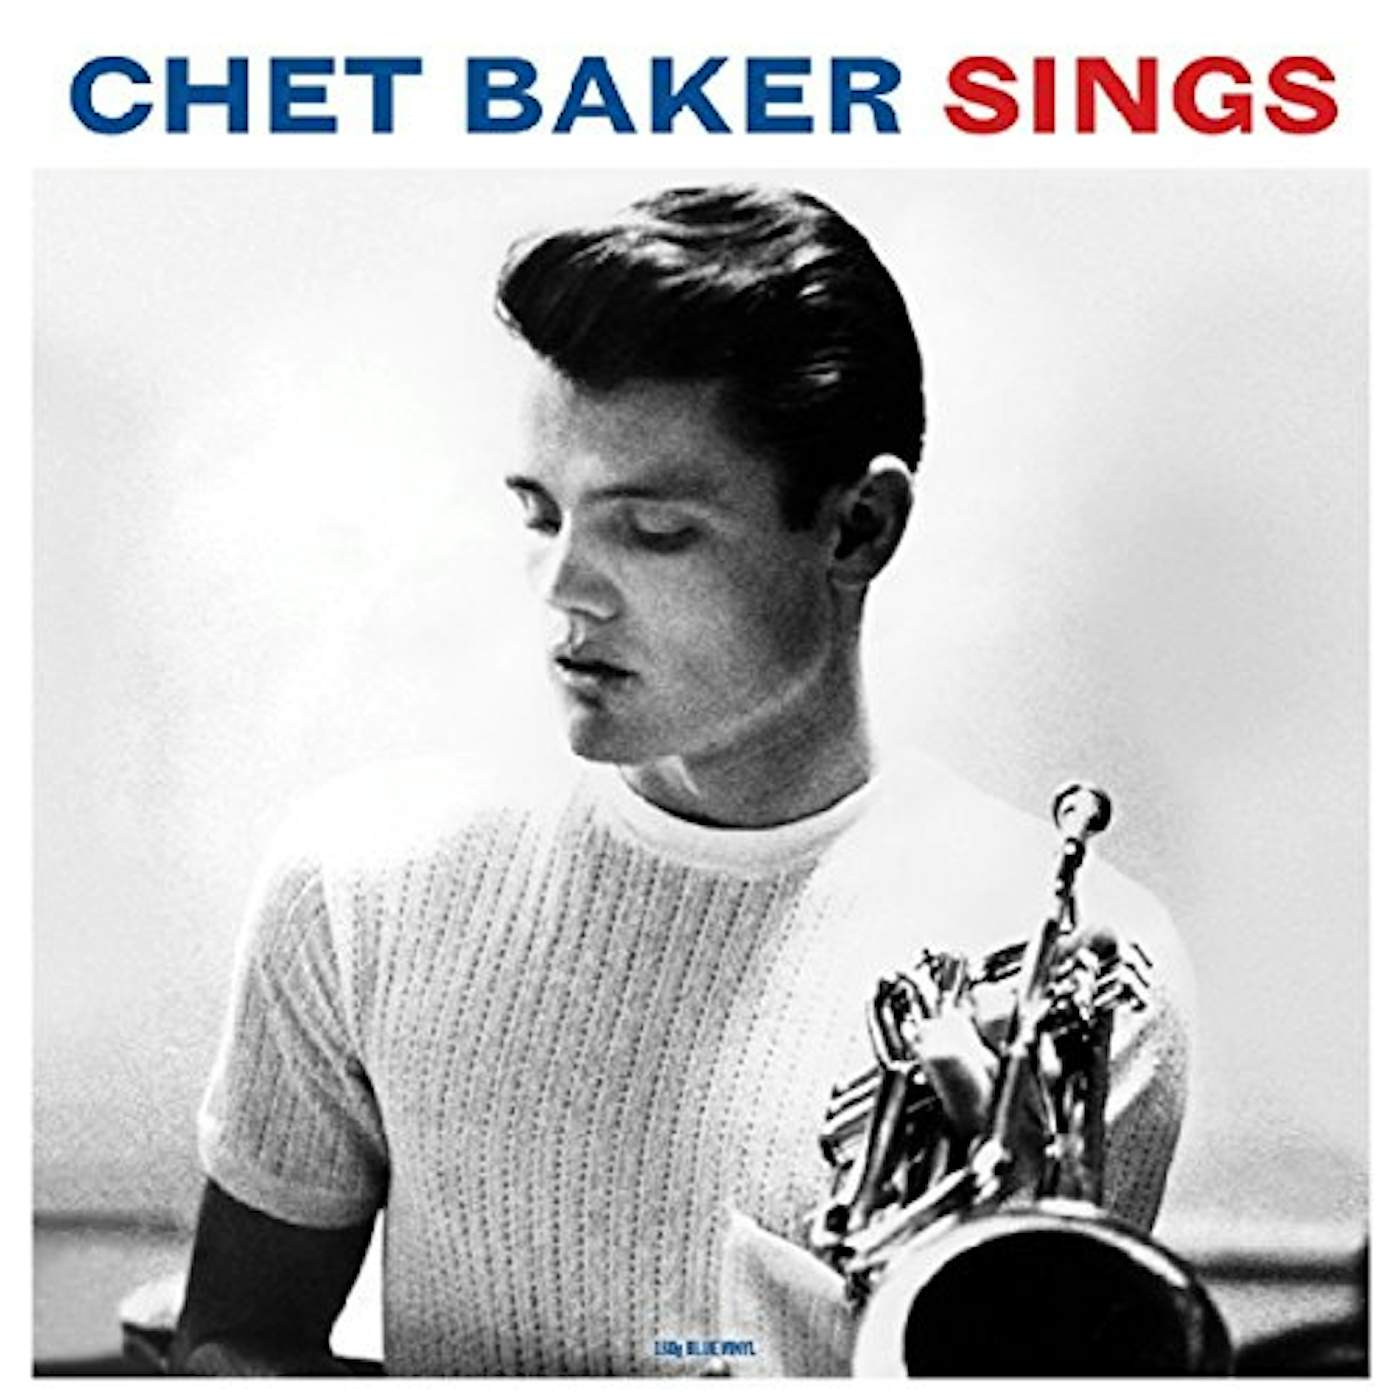 CHET BAKER SINGS (BLUE VINYL) Vinyl Record